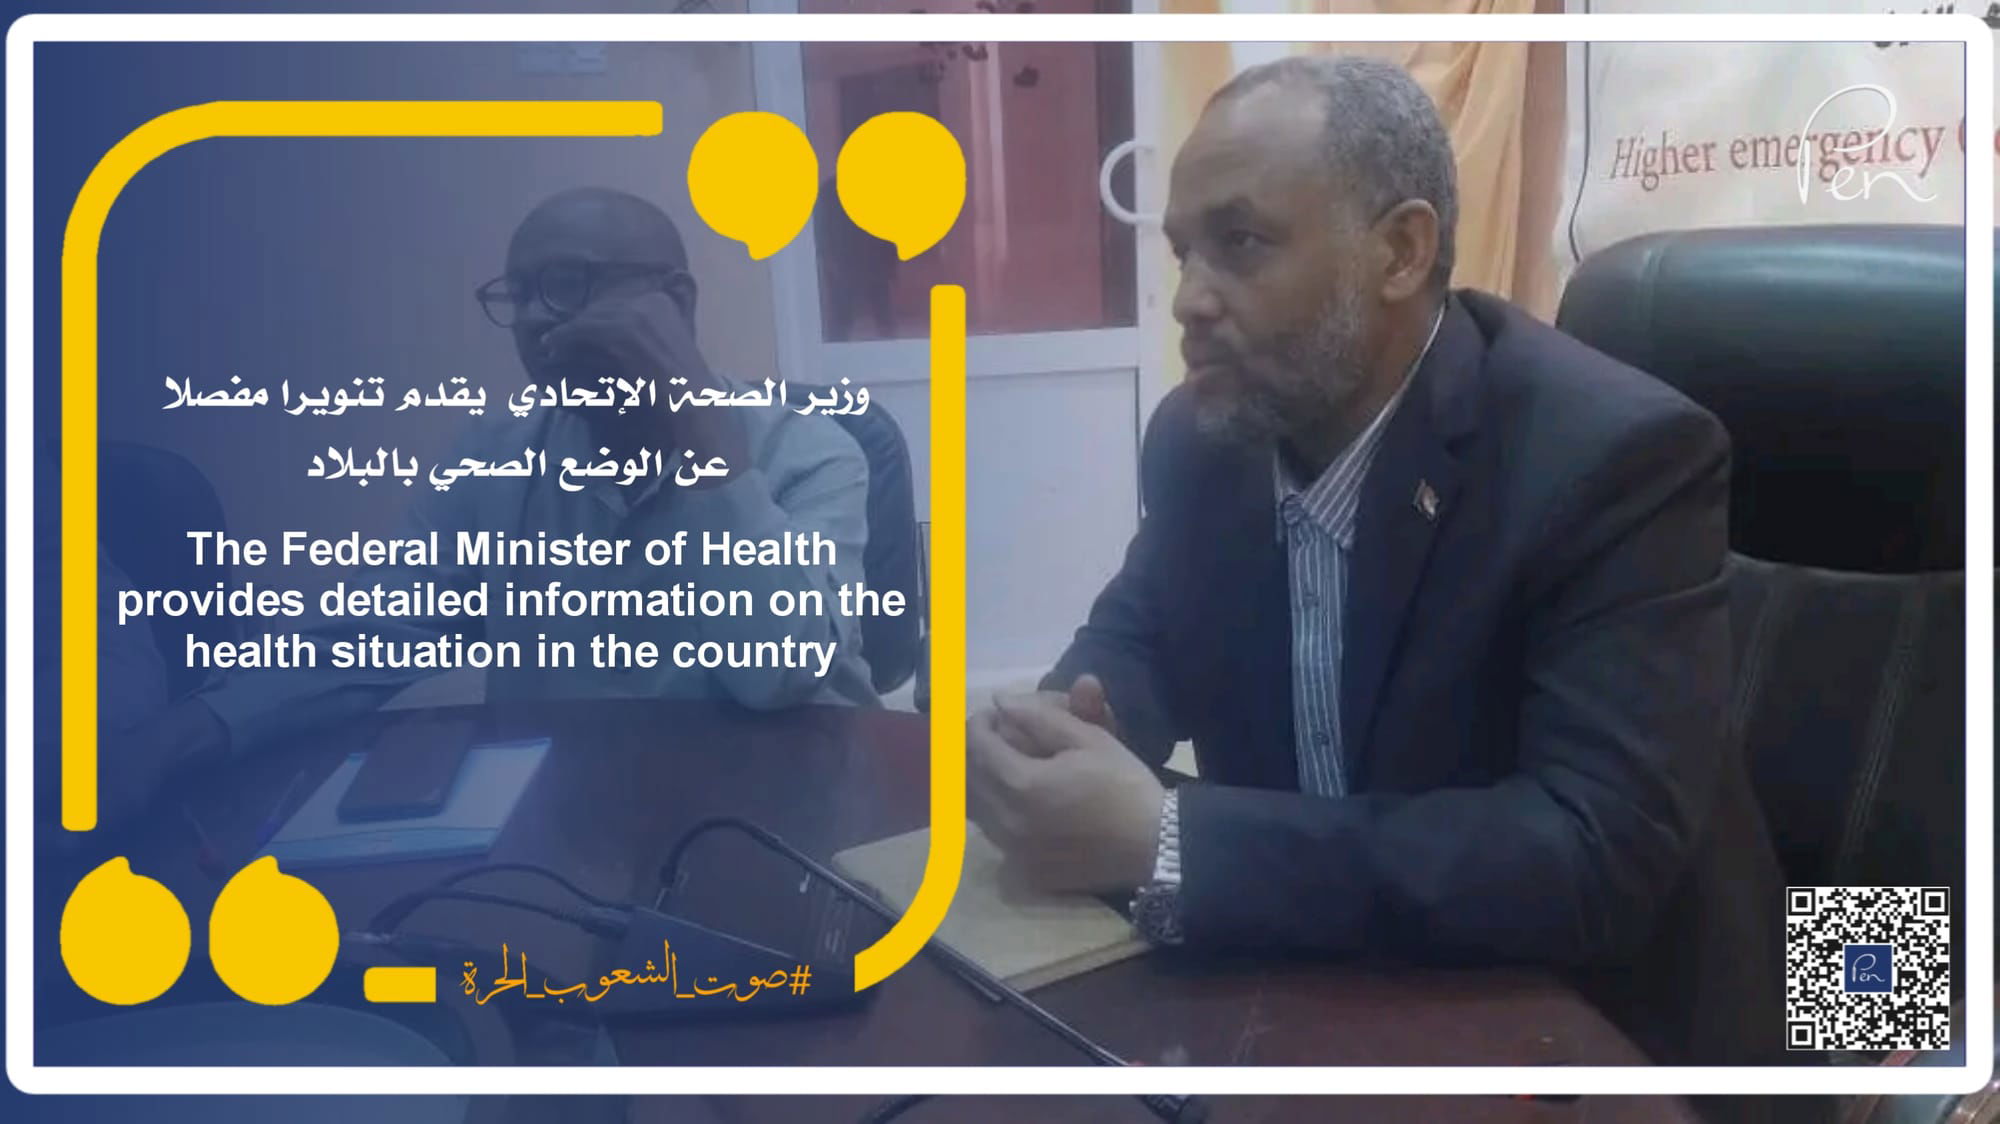 وزير الصحة الإتحادي يقدم تنويرا مفصلا عن الوضع الصحي بالبلاد